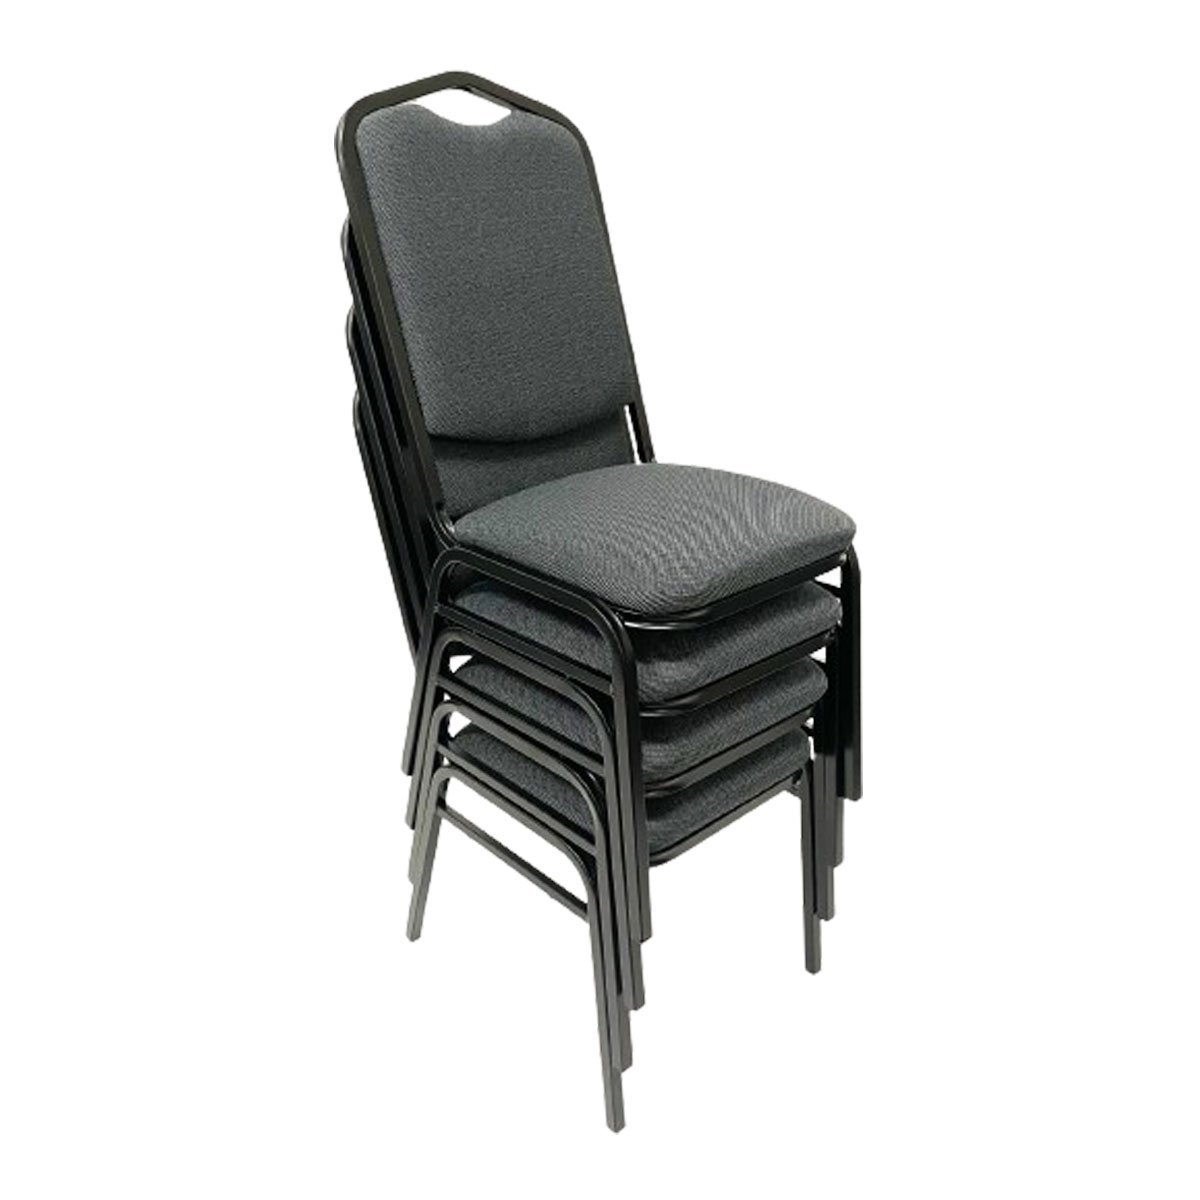 Cadeira para Hotel ou Eventos com Reforço Empilhável Cor Cinza Preto Kit 4 Unidades Poltronas do Sul - 1